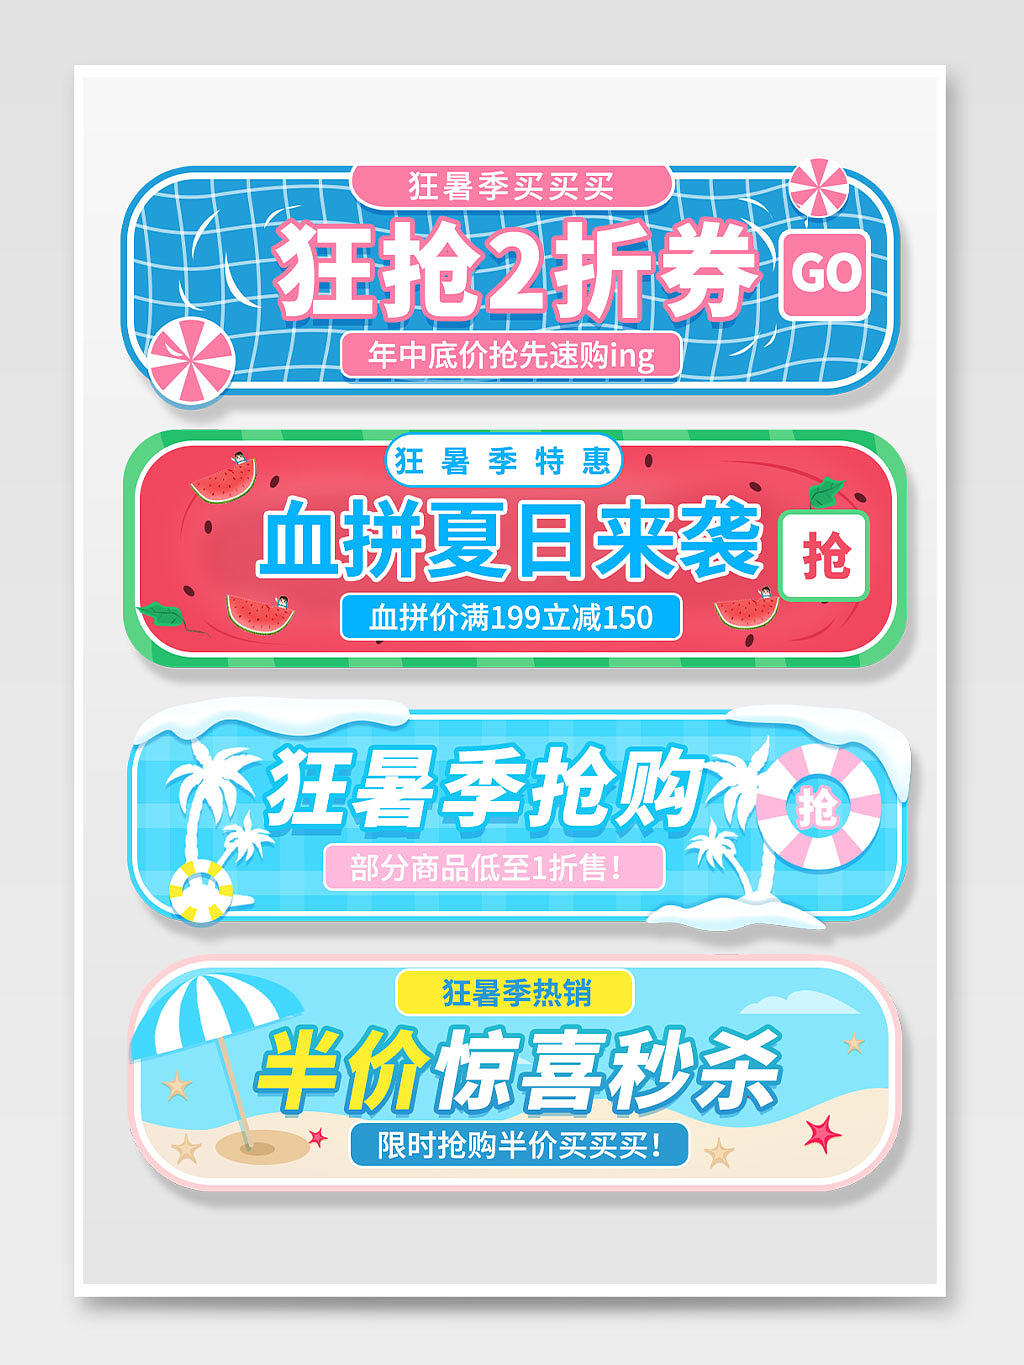 夏凉节红蓝色卡通夏日狂暑季促销天猫狂暑季入口胶囊